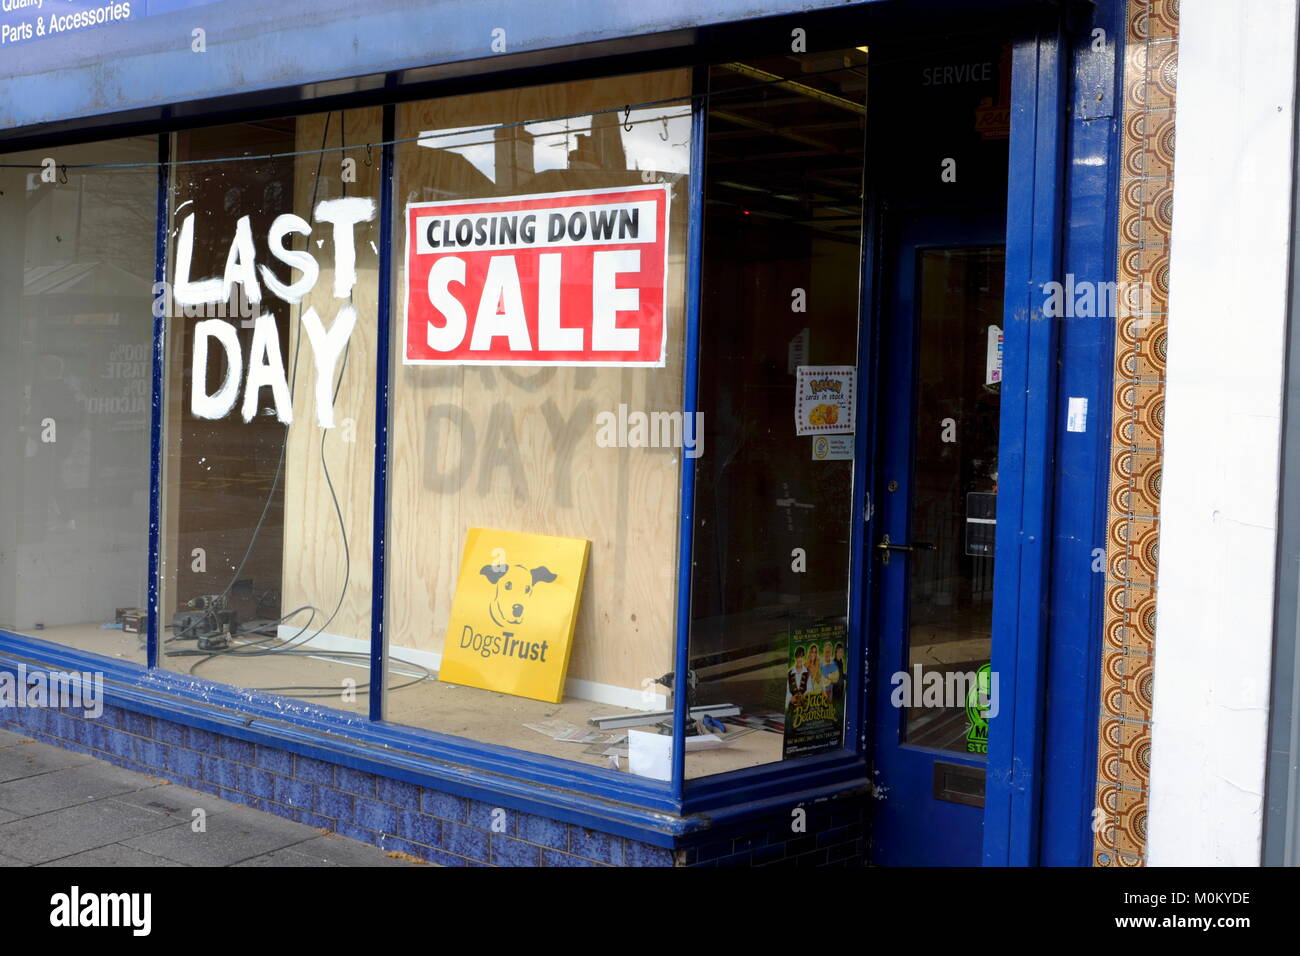 Shop an der High Street in Brentwood Essex anzeigen Schließung Verkauf Zeichen auf Store Fenster vorne. Stockfoto